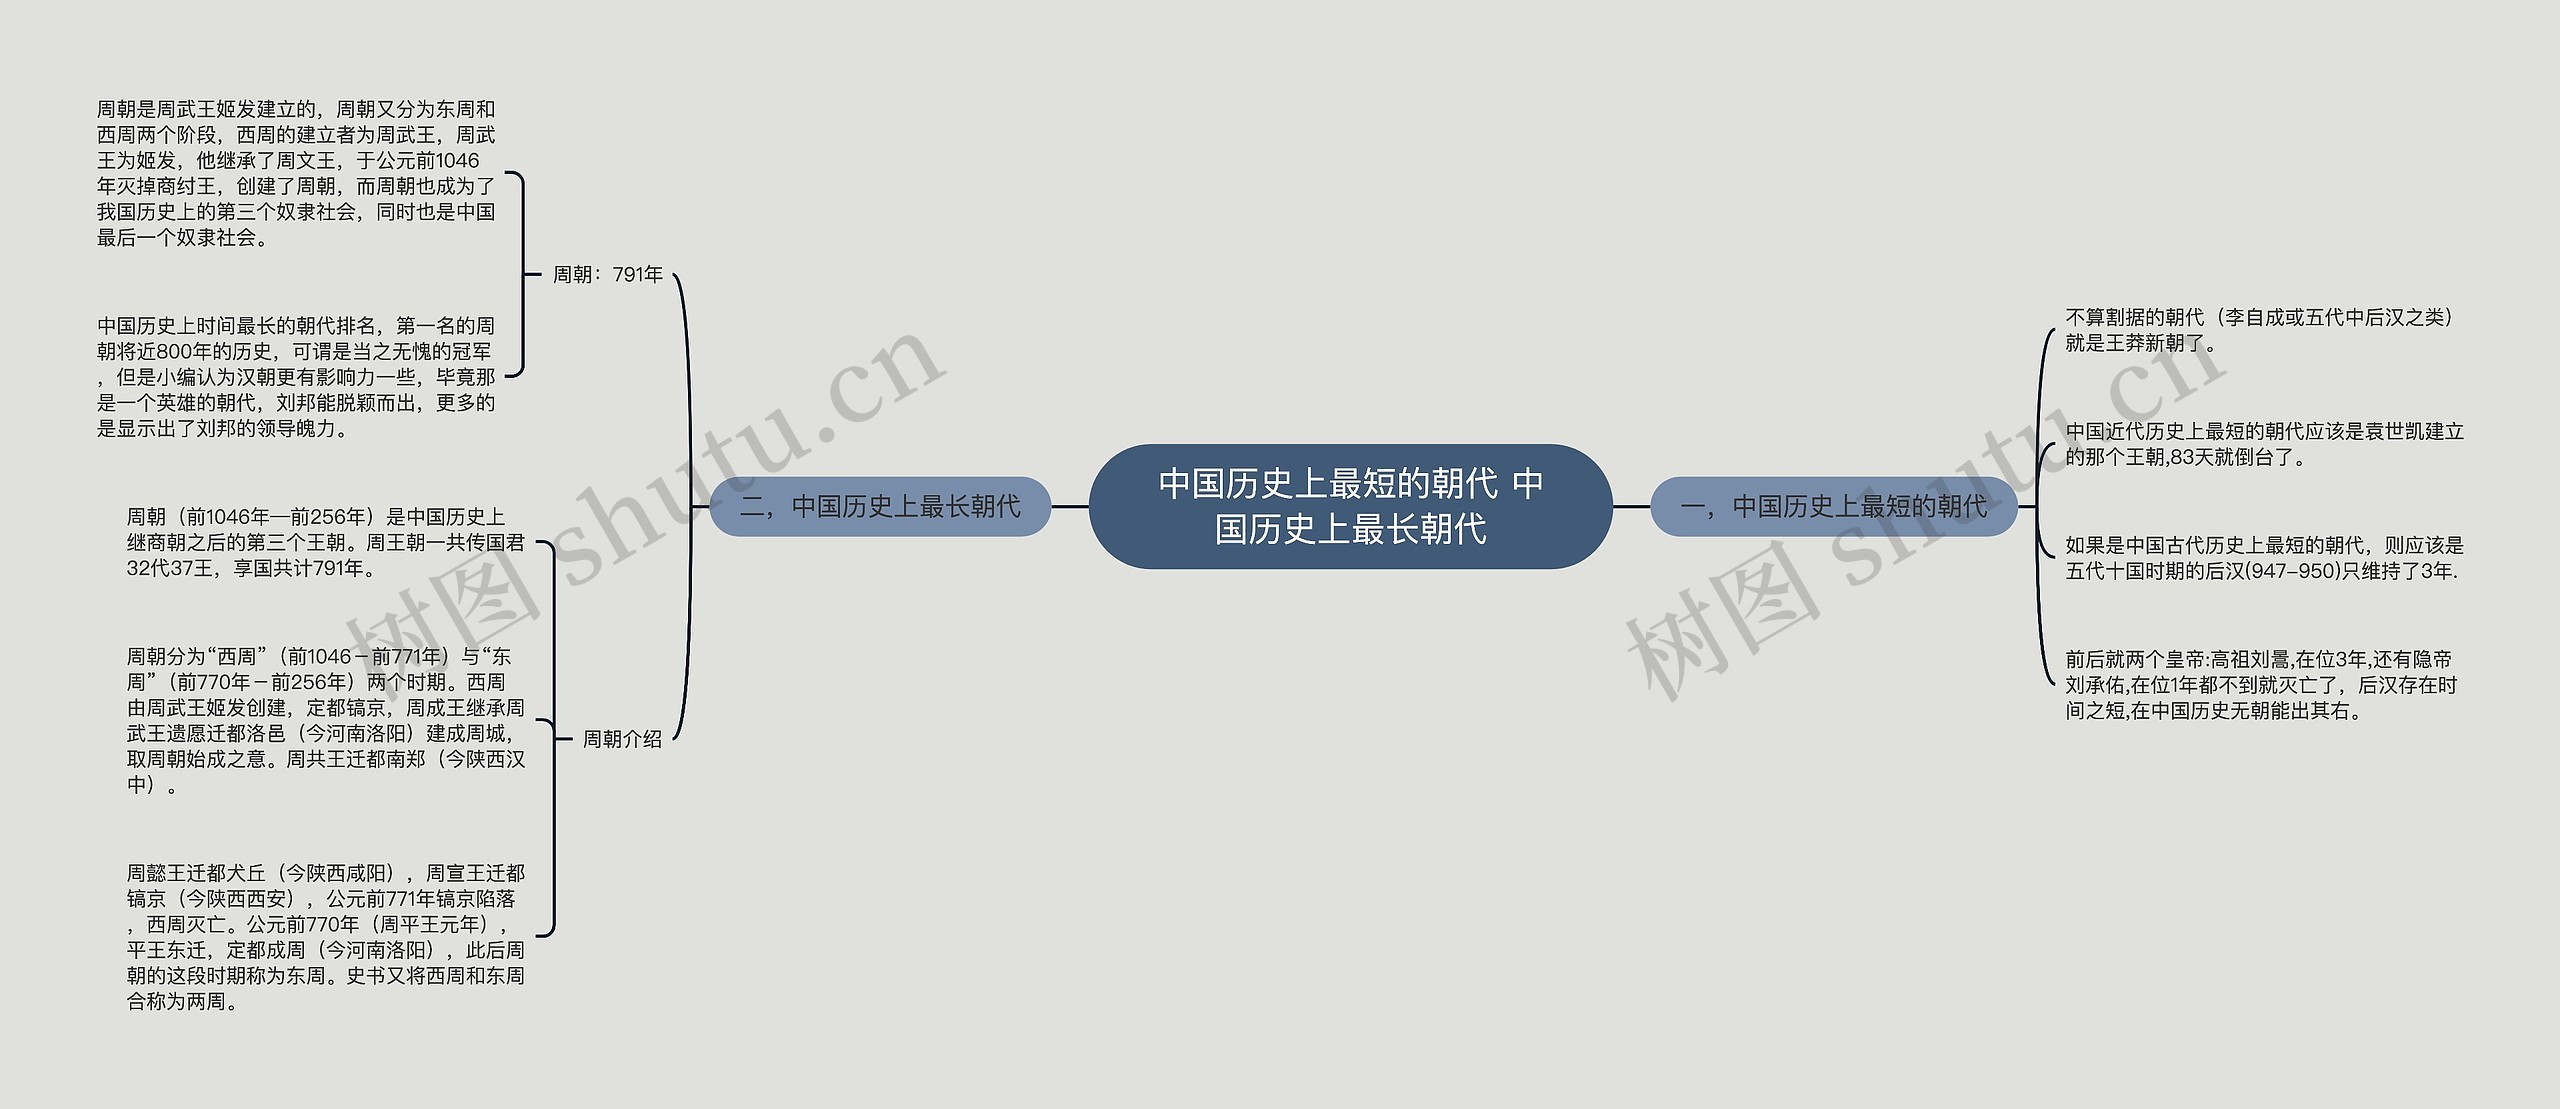 中国历史上最短的朝代 中国历史上最长朝代思维导图